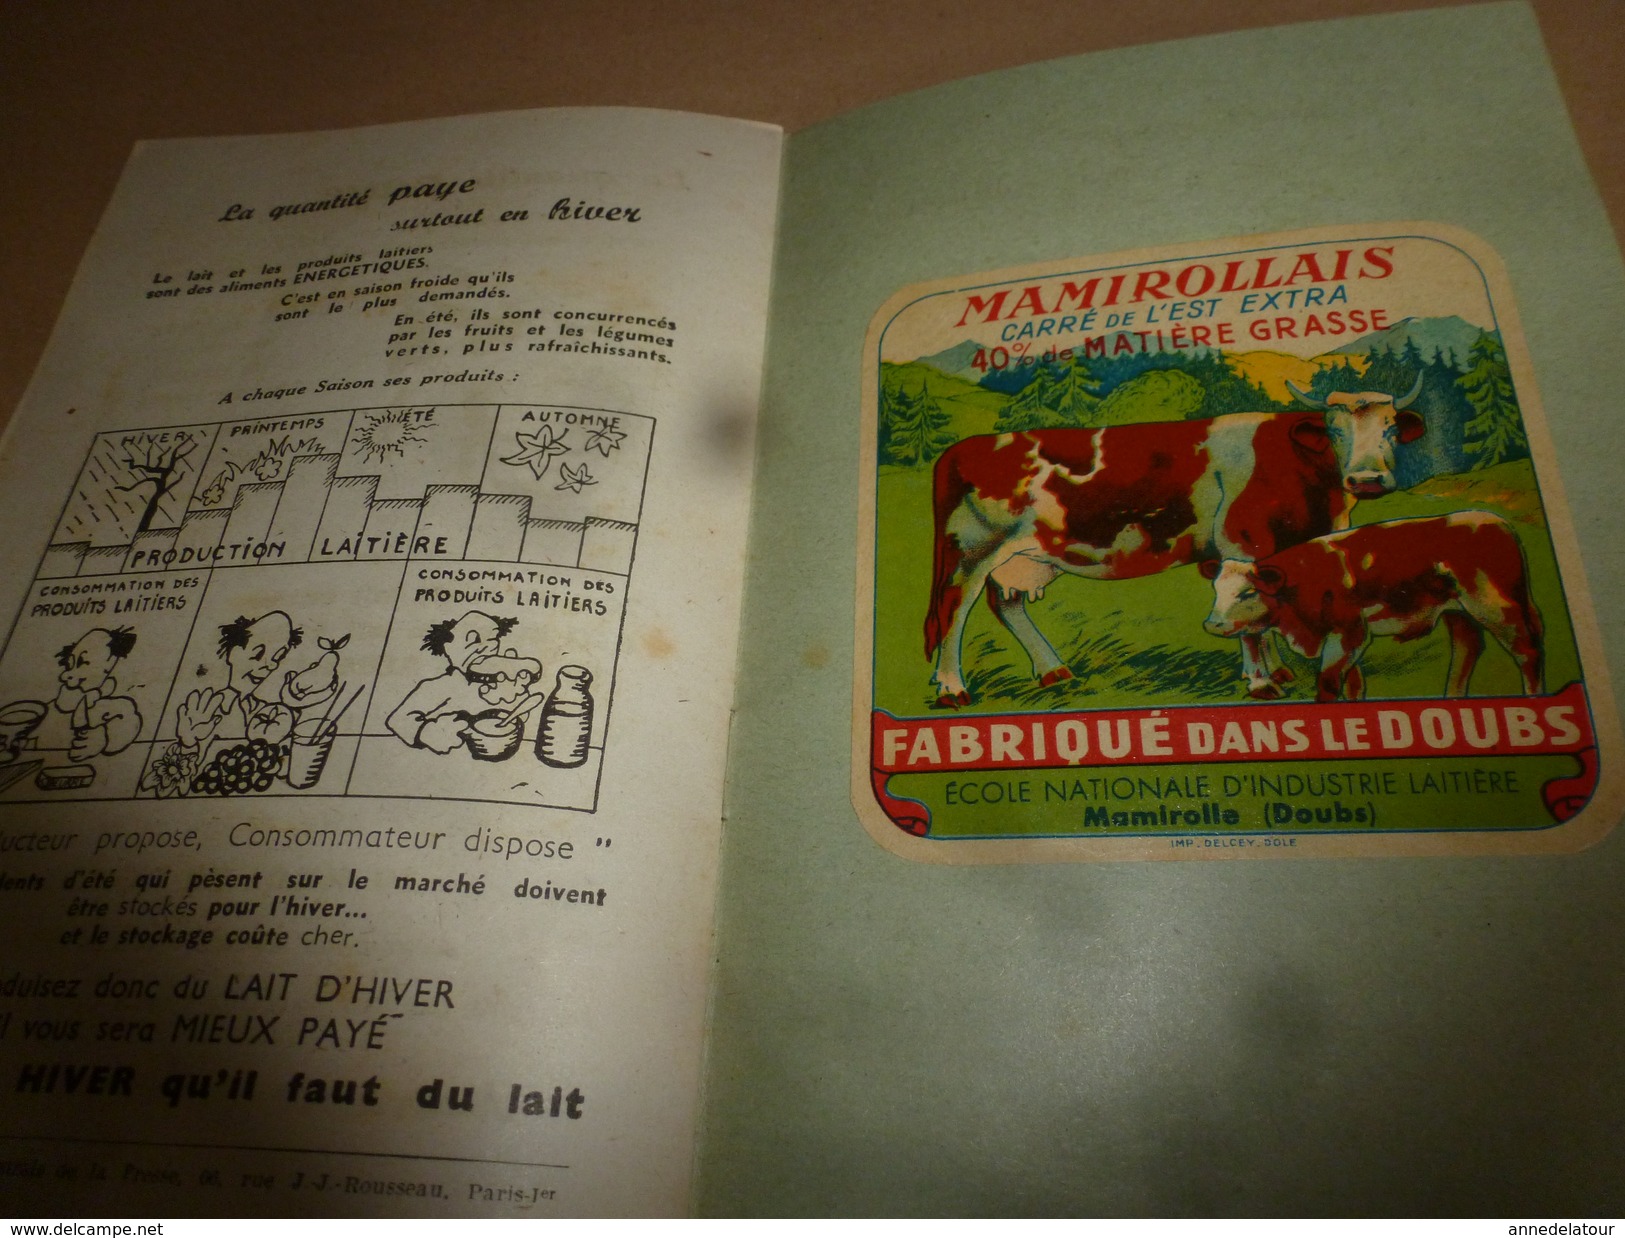 1957 Produire du bon lait (Brochure humorist. Féd. des Producteurs de Lait) avec 2 dessus PONT-LEVEQUE et  MAMIROLLAIS